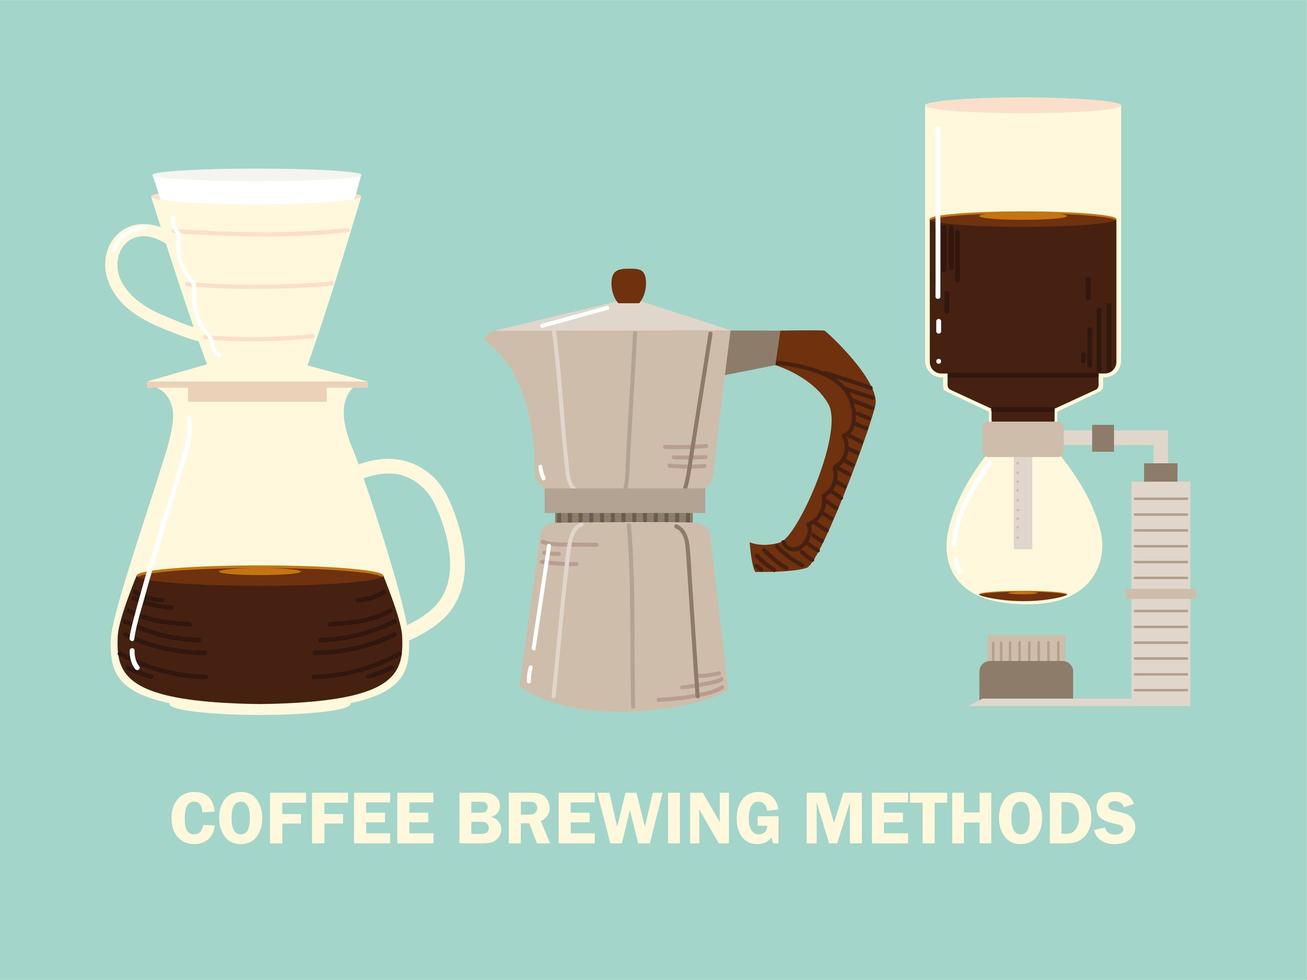 méthodes de préparation du café, siphon moka pot et café filtre vecteur